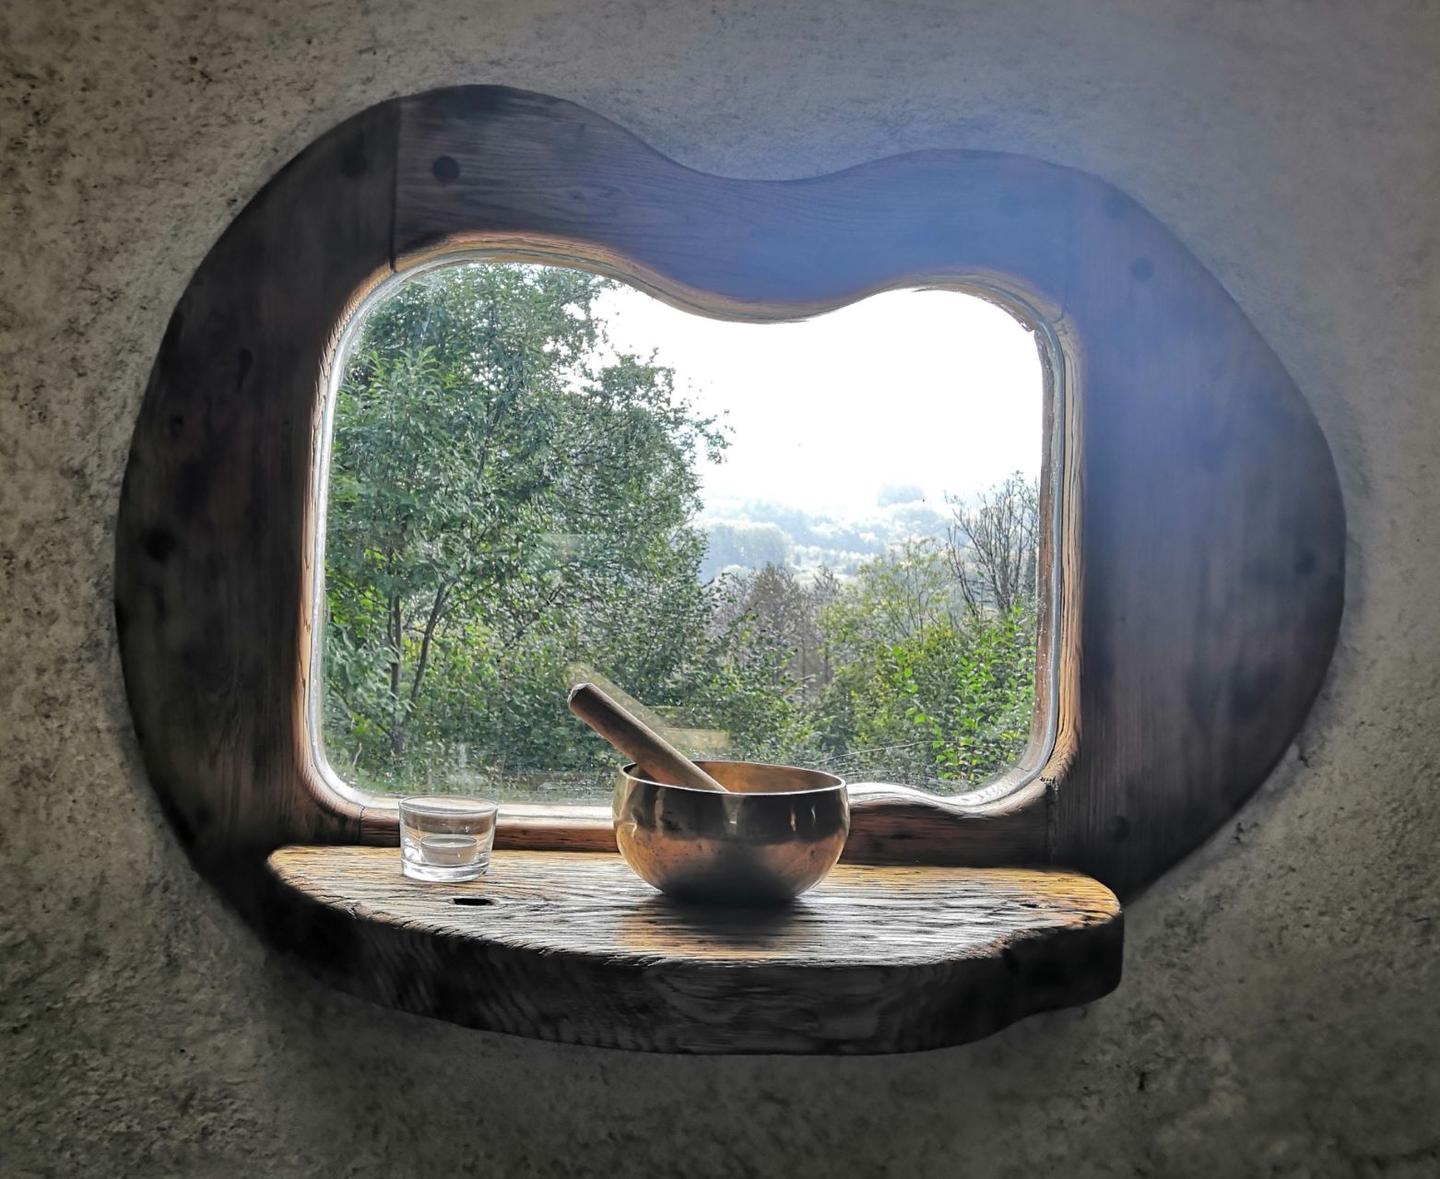 Hôte GreenGo: Les loges de la nature - Nuits en Kerterre pour vivre confortablement la simplicité en pleine nature - Image 22